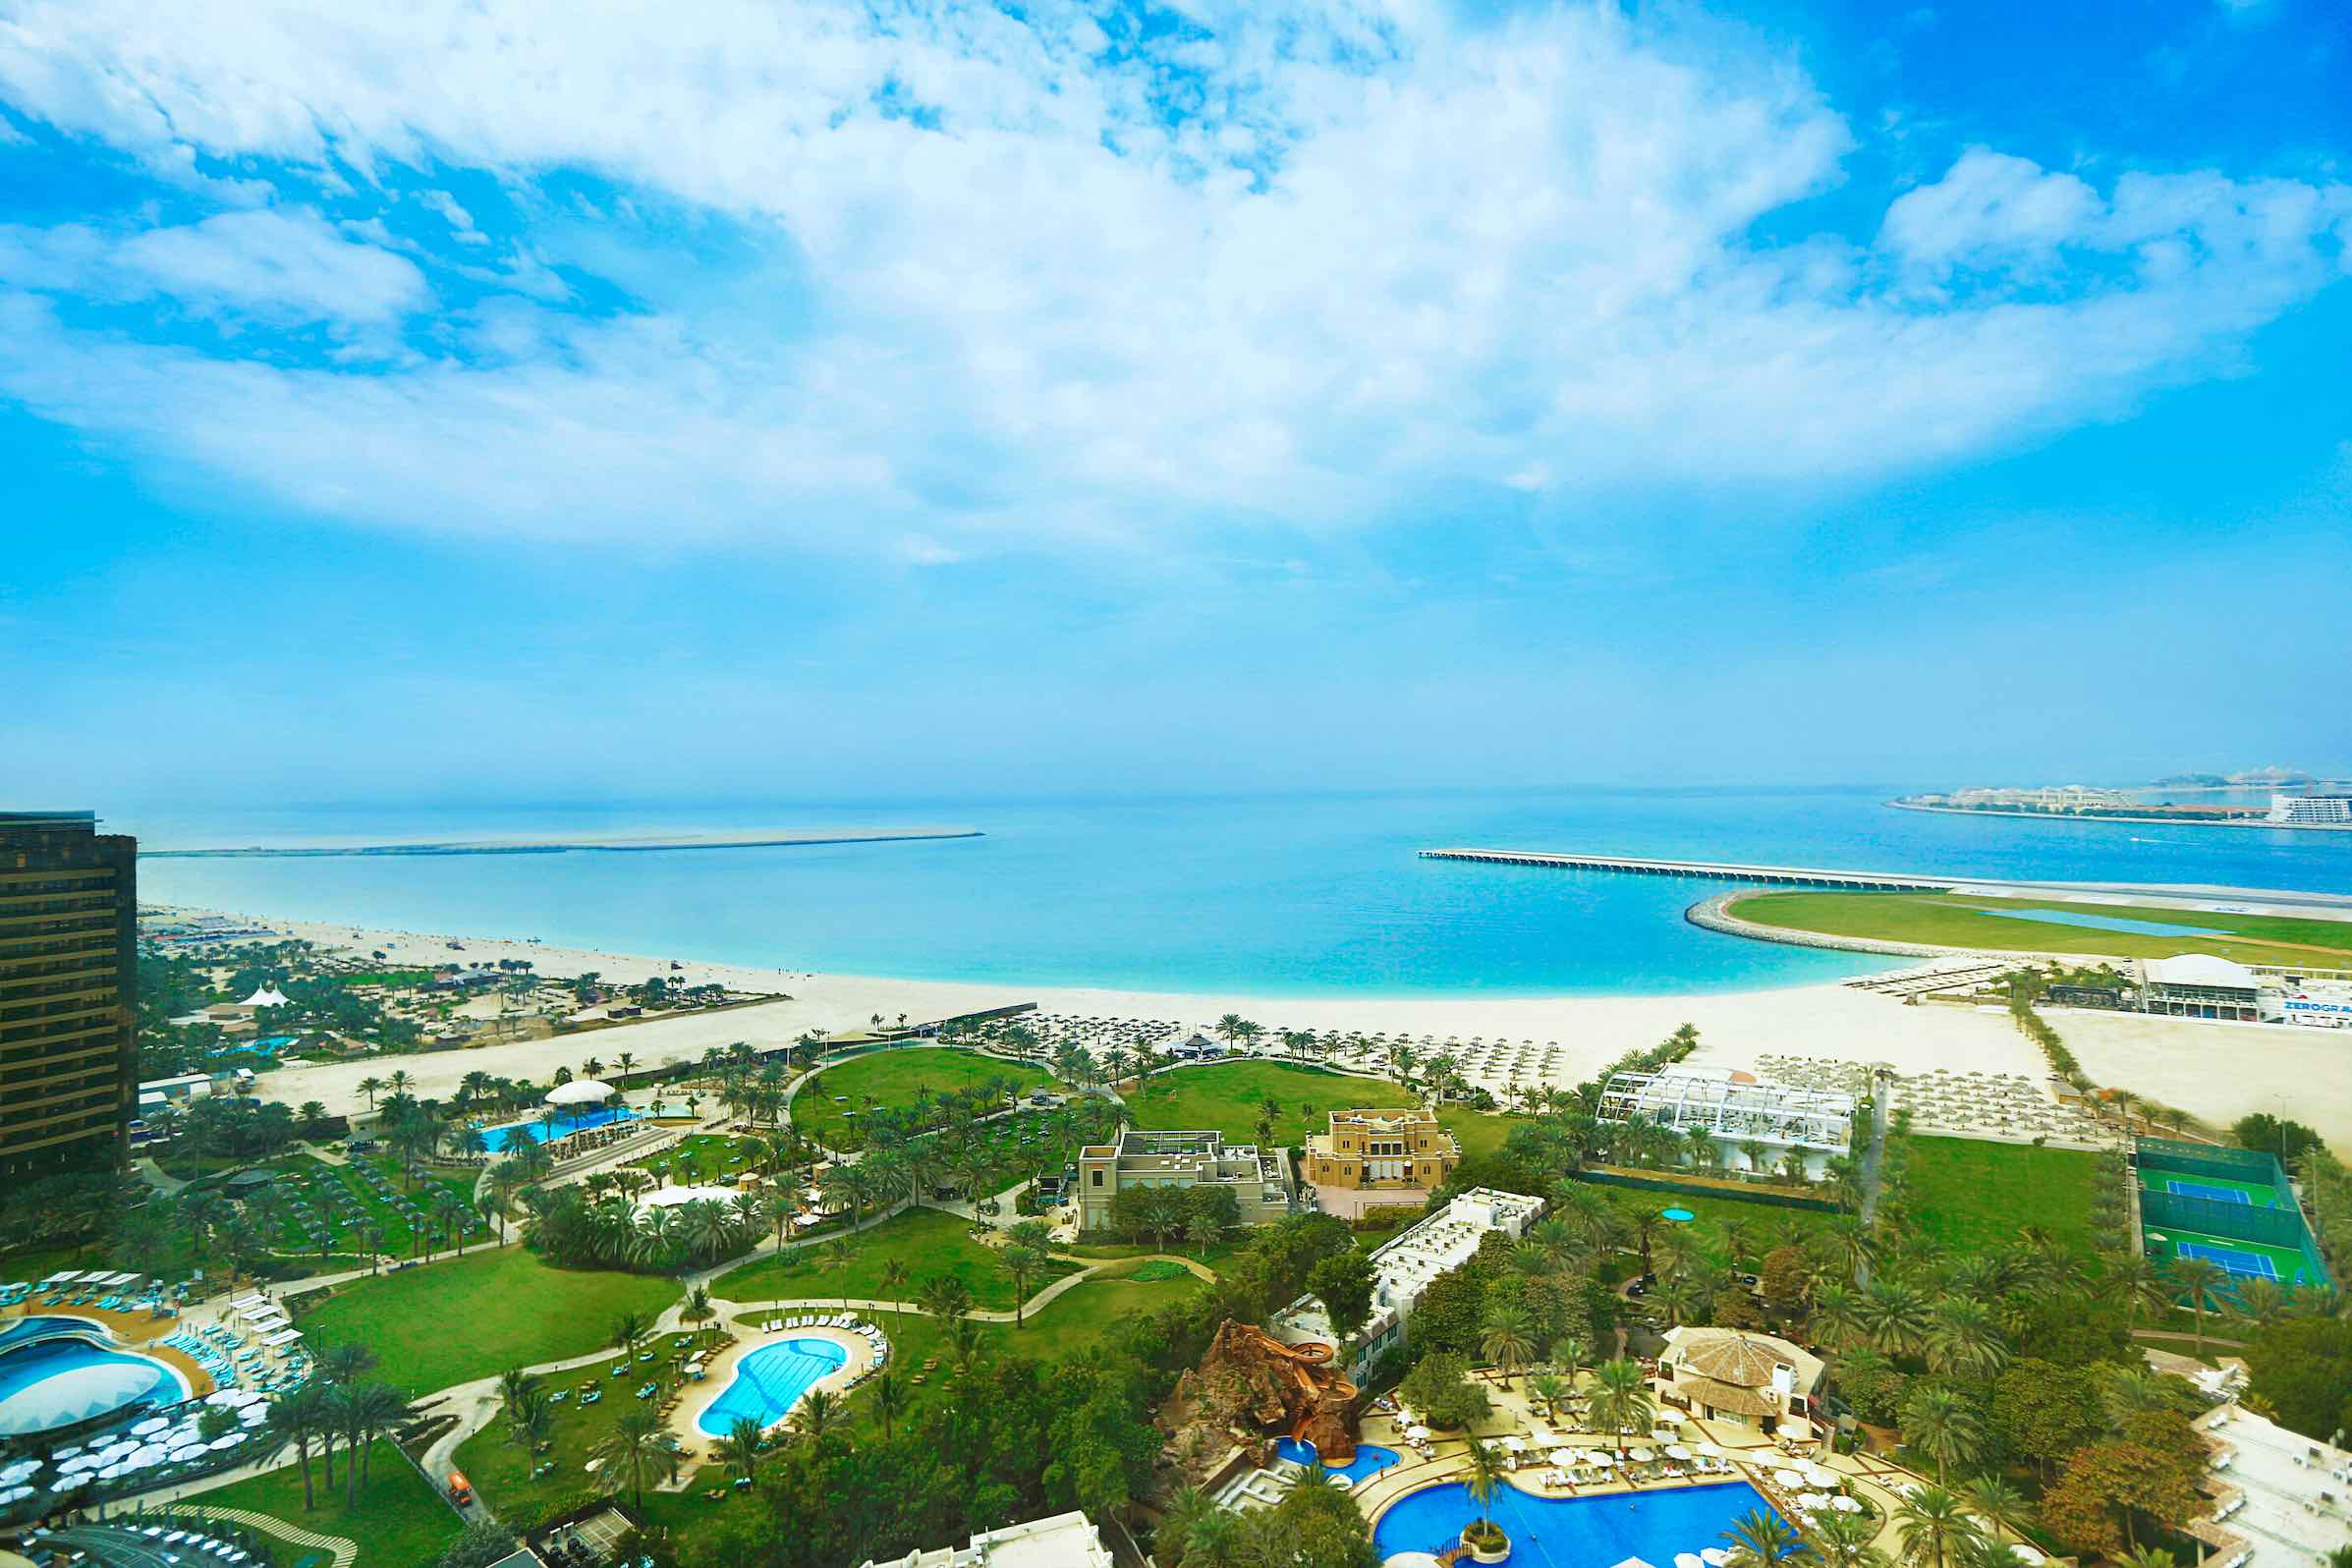 essential UAE staycations